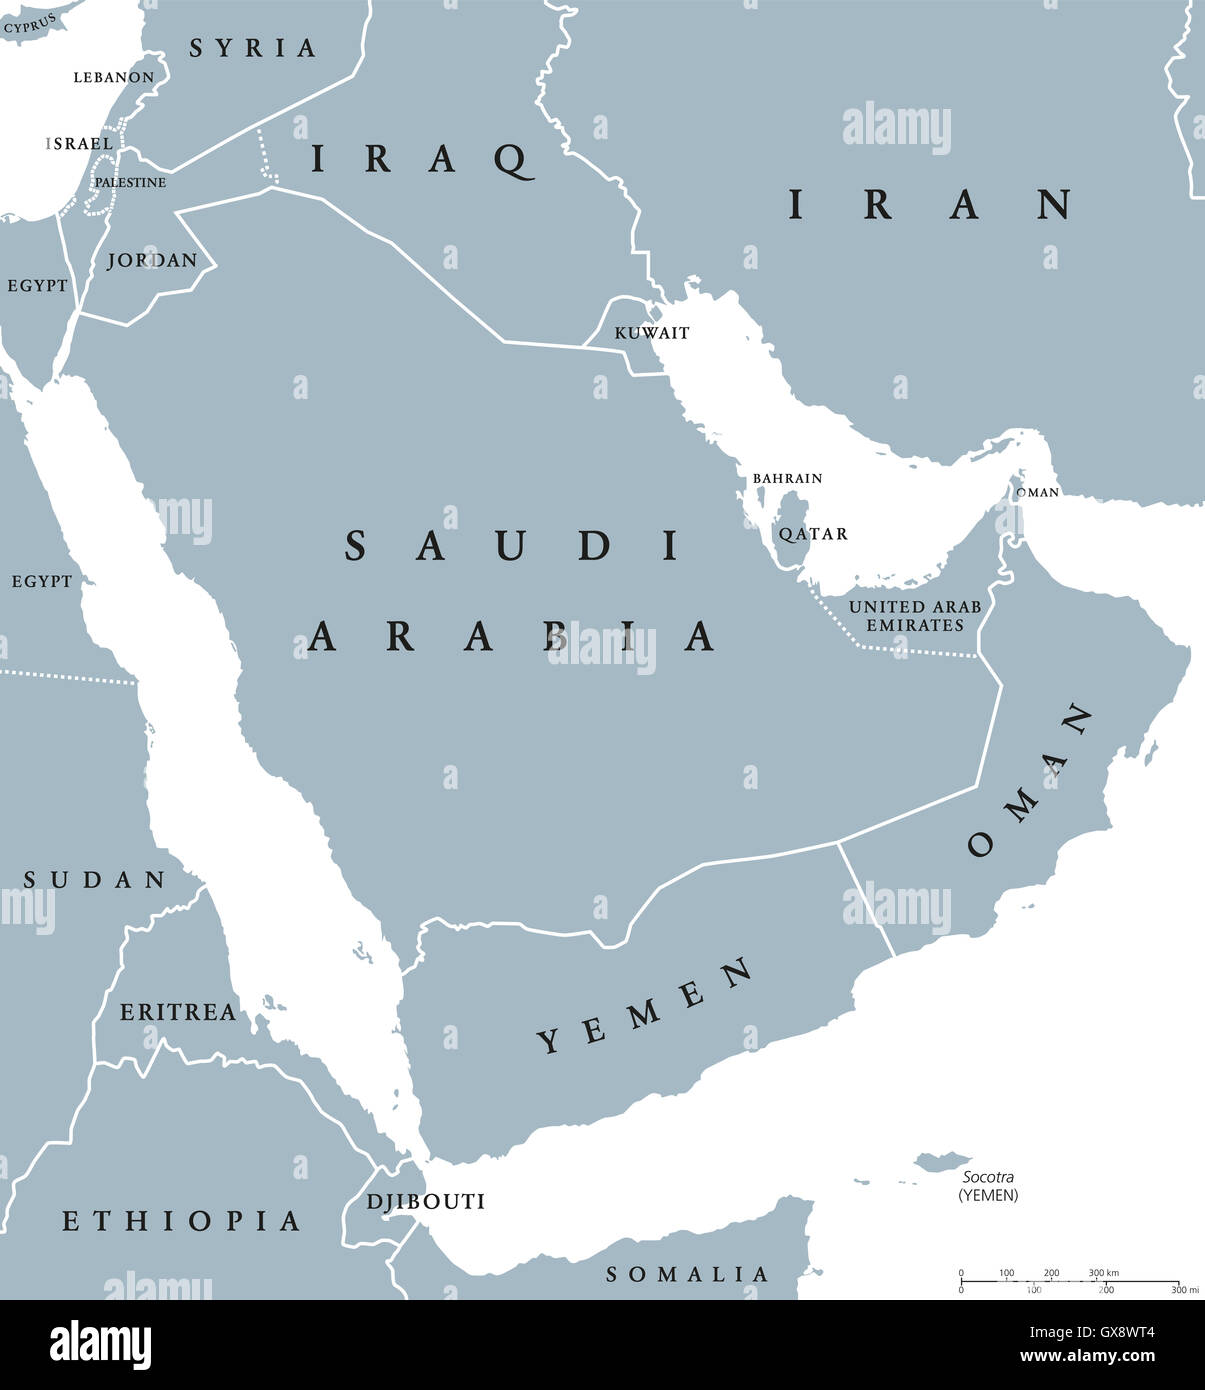 Países de la península arábiga mapa político con fronteras nacionales y países individuales. Arabia es una península de Asia occidental. Foto de stock